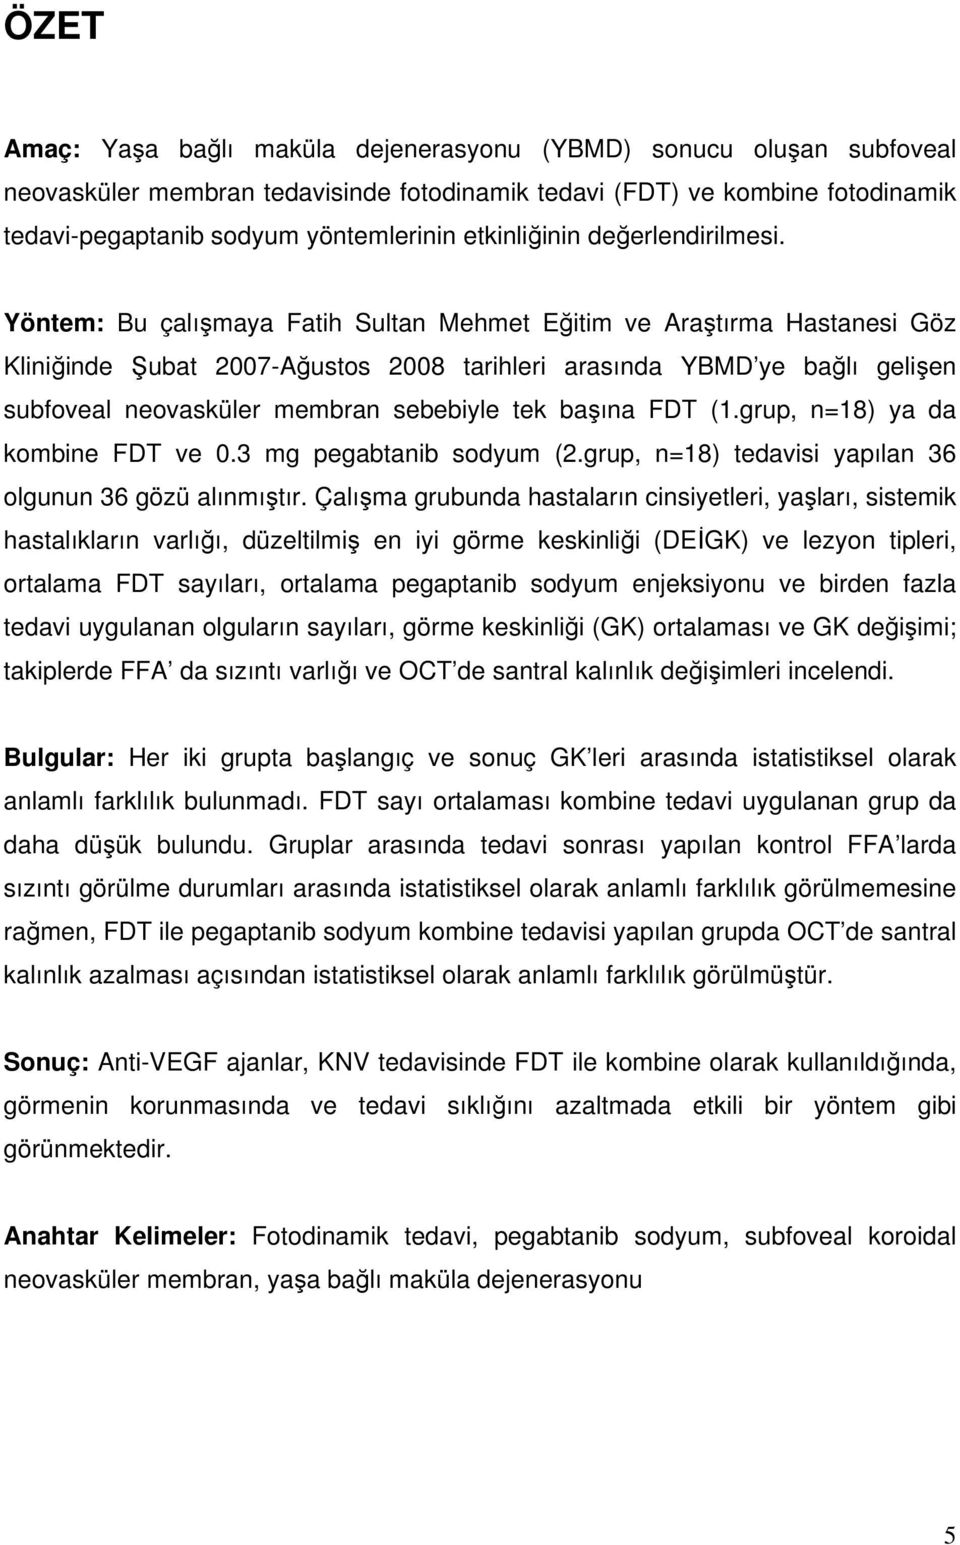 Yöntem: Bu çalımaya Fatih Sultan Mehmet Eitim ve Aratırma Hastanesi Göz Kliniinde ubat 2007-Austos 2008 tarihleri arasında YBMD ye balı gelien subfoveal neovasküler membran sebebiyle tek baına FDT (1.